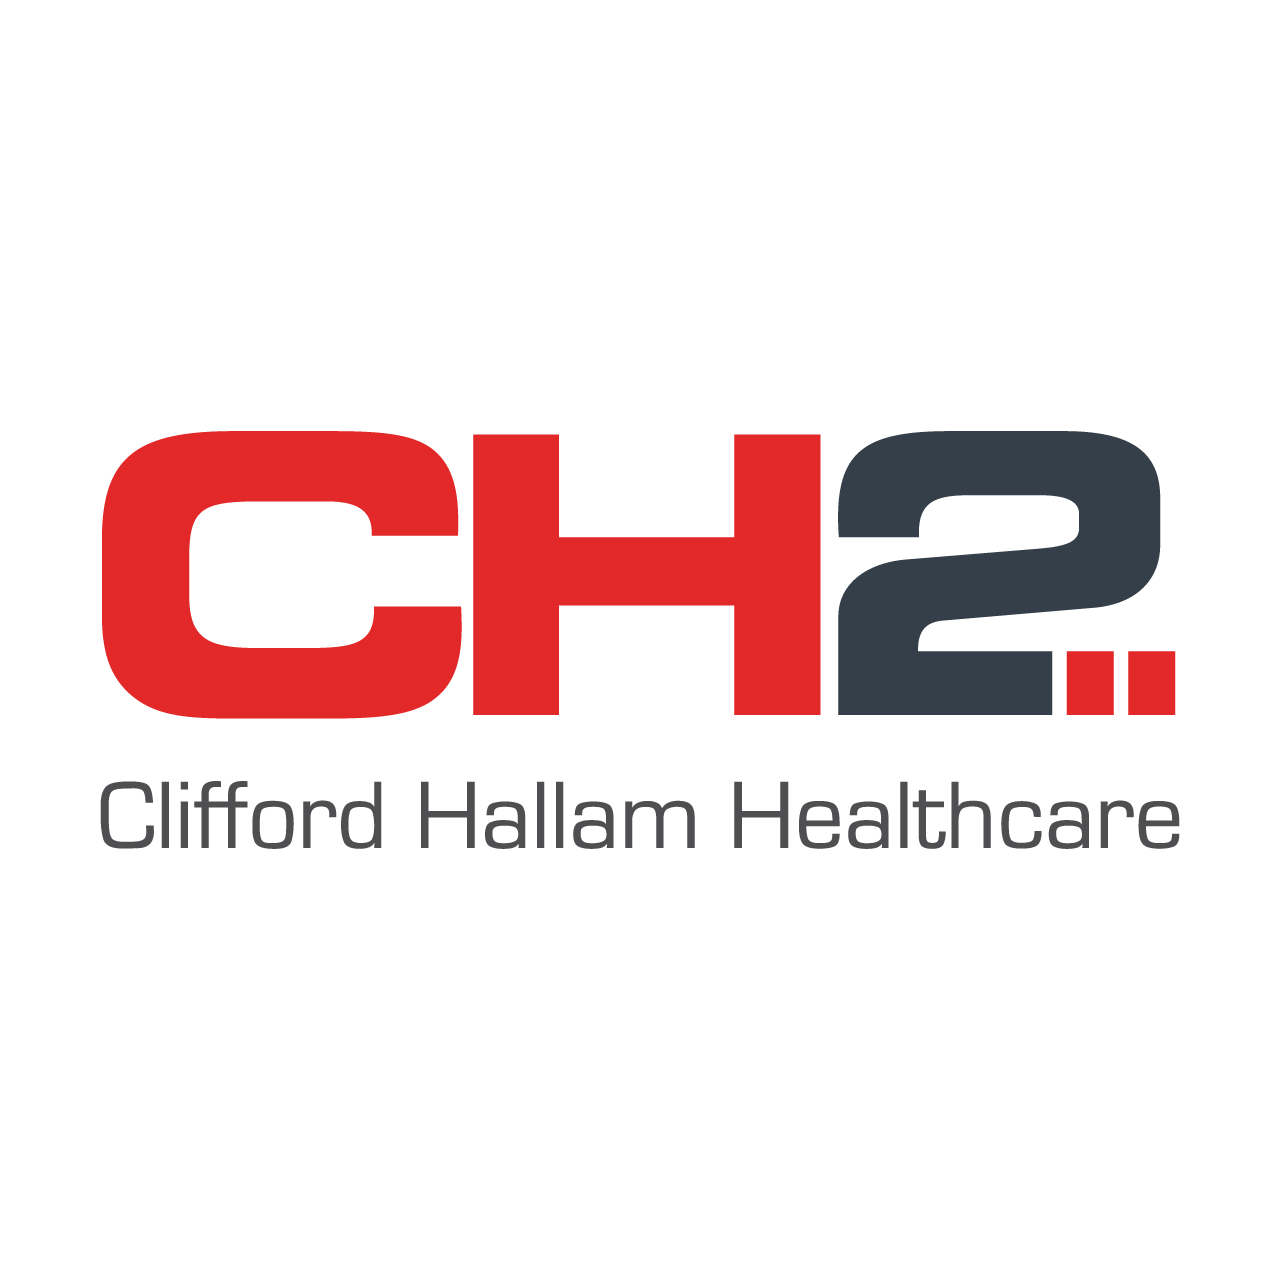 Clifford Hallam Healthcare